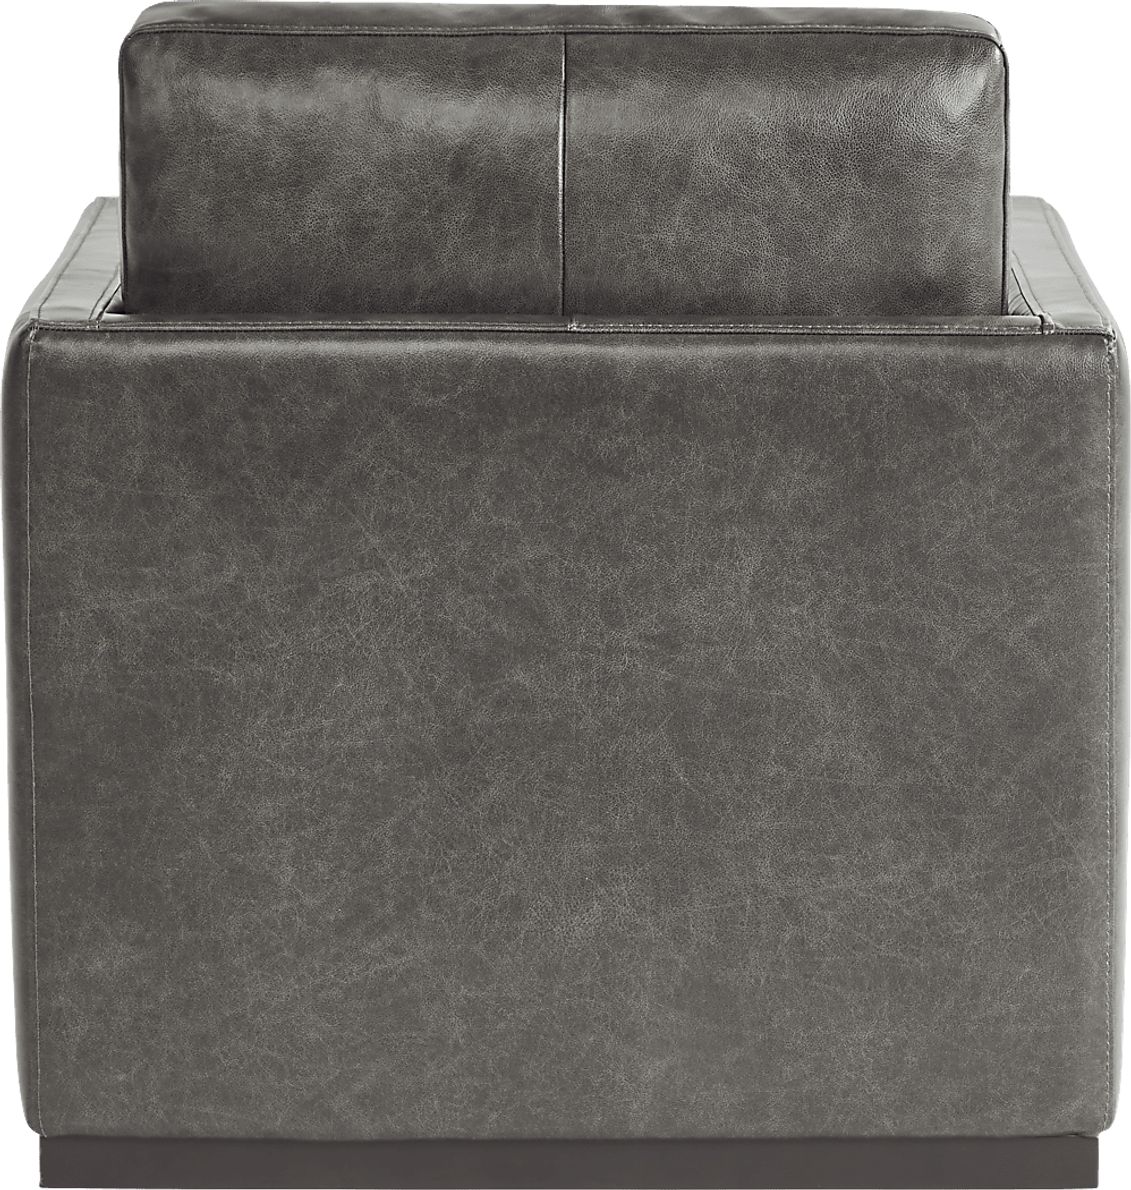 Ryker Leather Swivel Chair